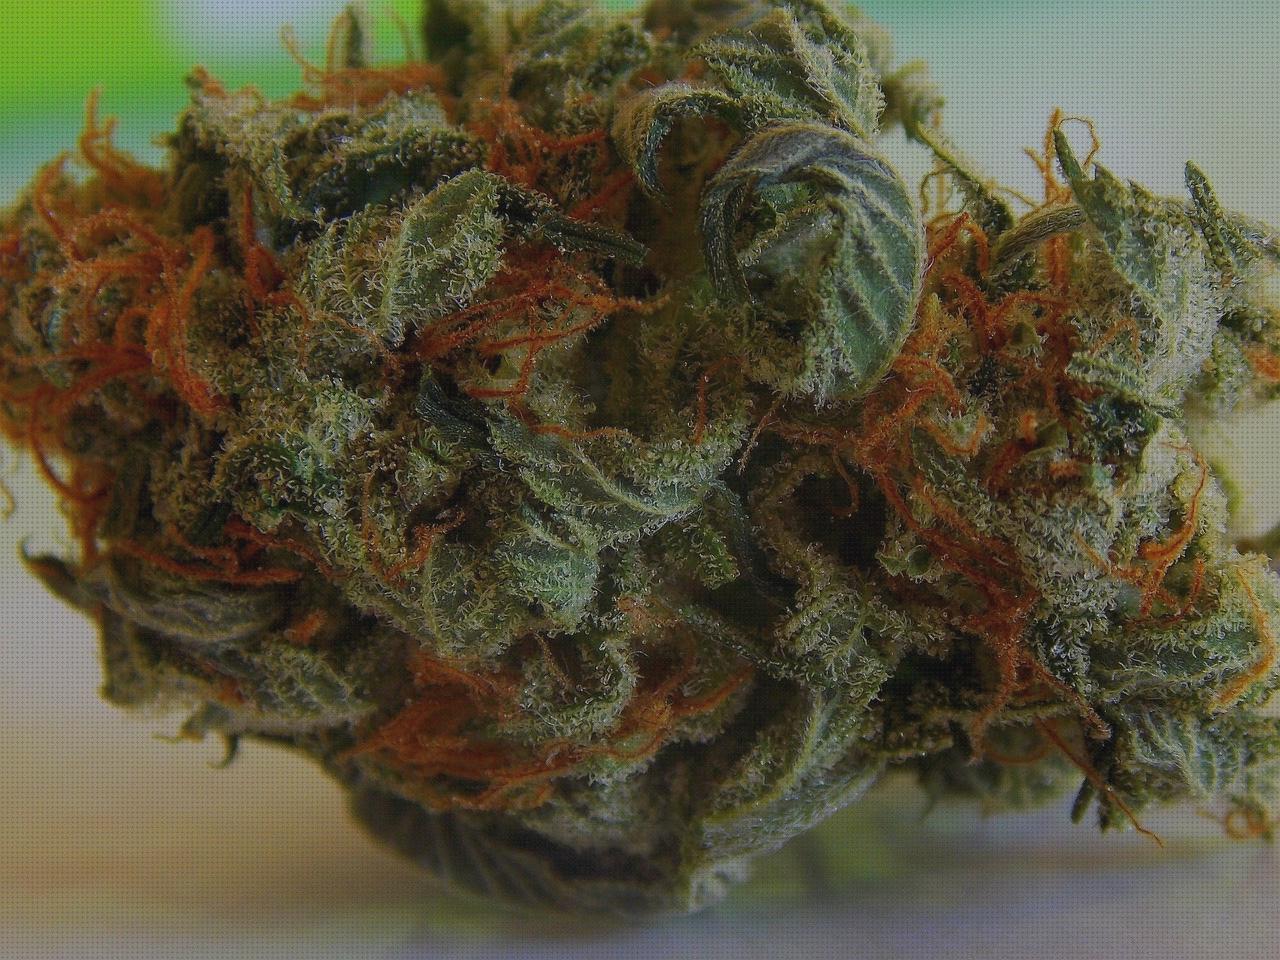 Análisis de los 35 mejores cogollos marihuanas secados bajo análisis